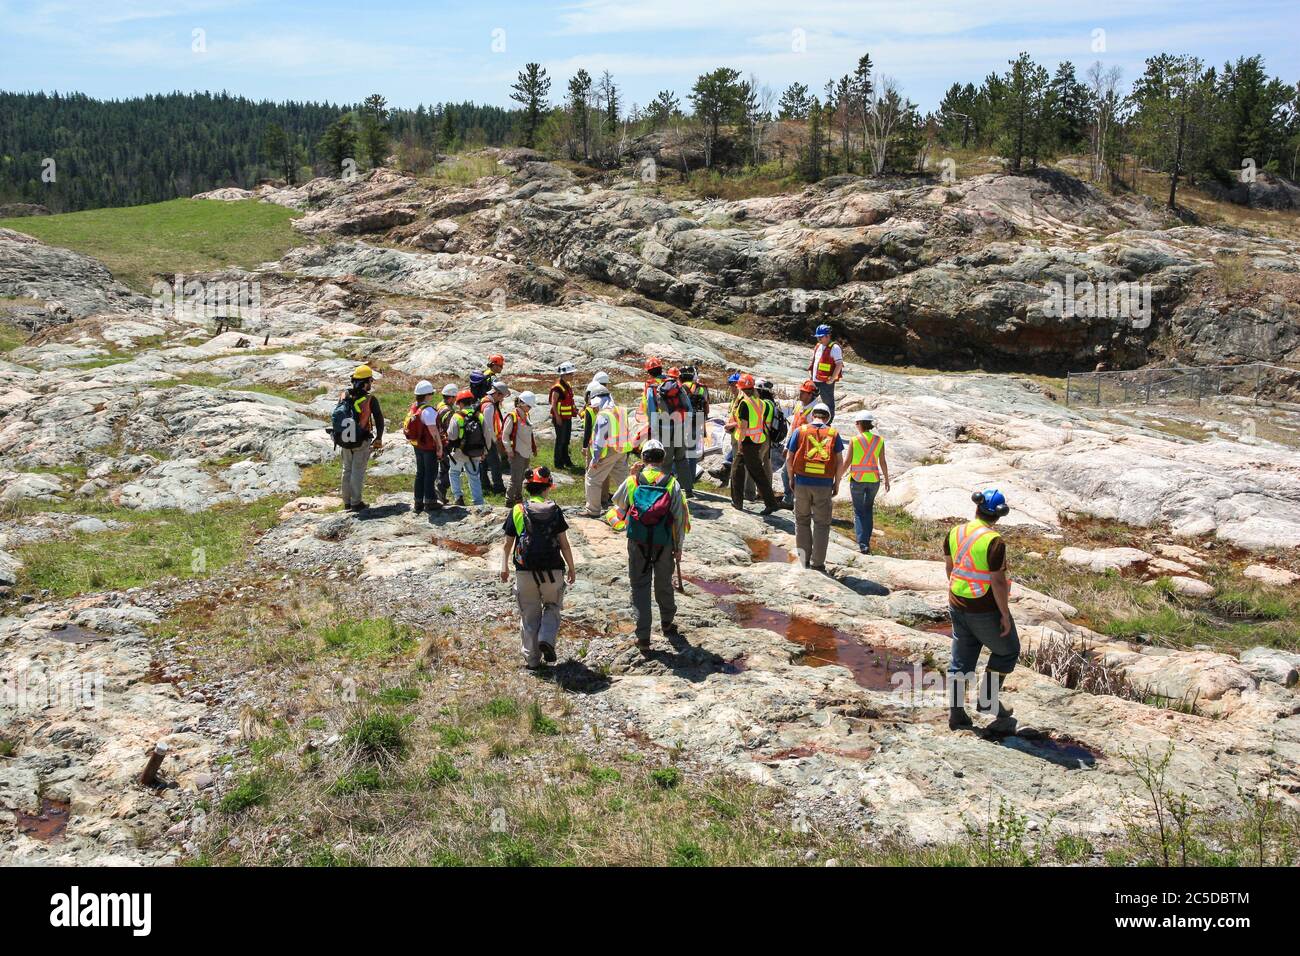 SUDBURY, ONTARIO, CANADA - MAI 21 2009 : groupe de travailleurs et de géologues en casques et gilets haute visibilité sur un site géologique hors-récolte. Banque D'Images